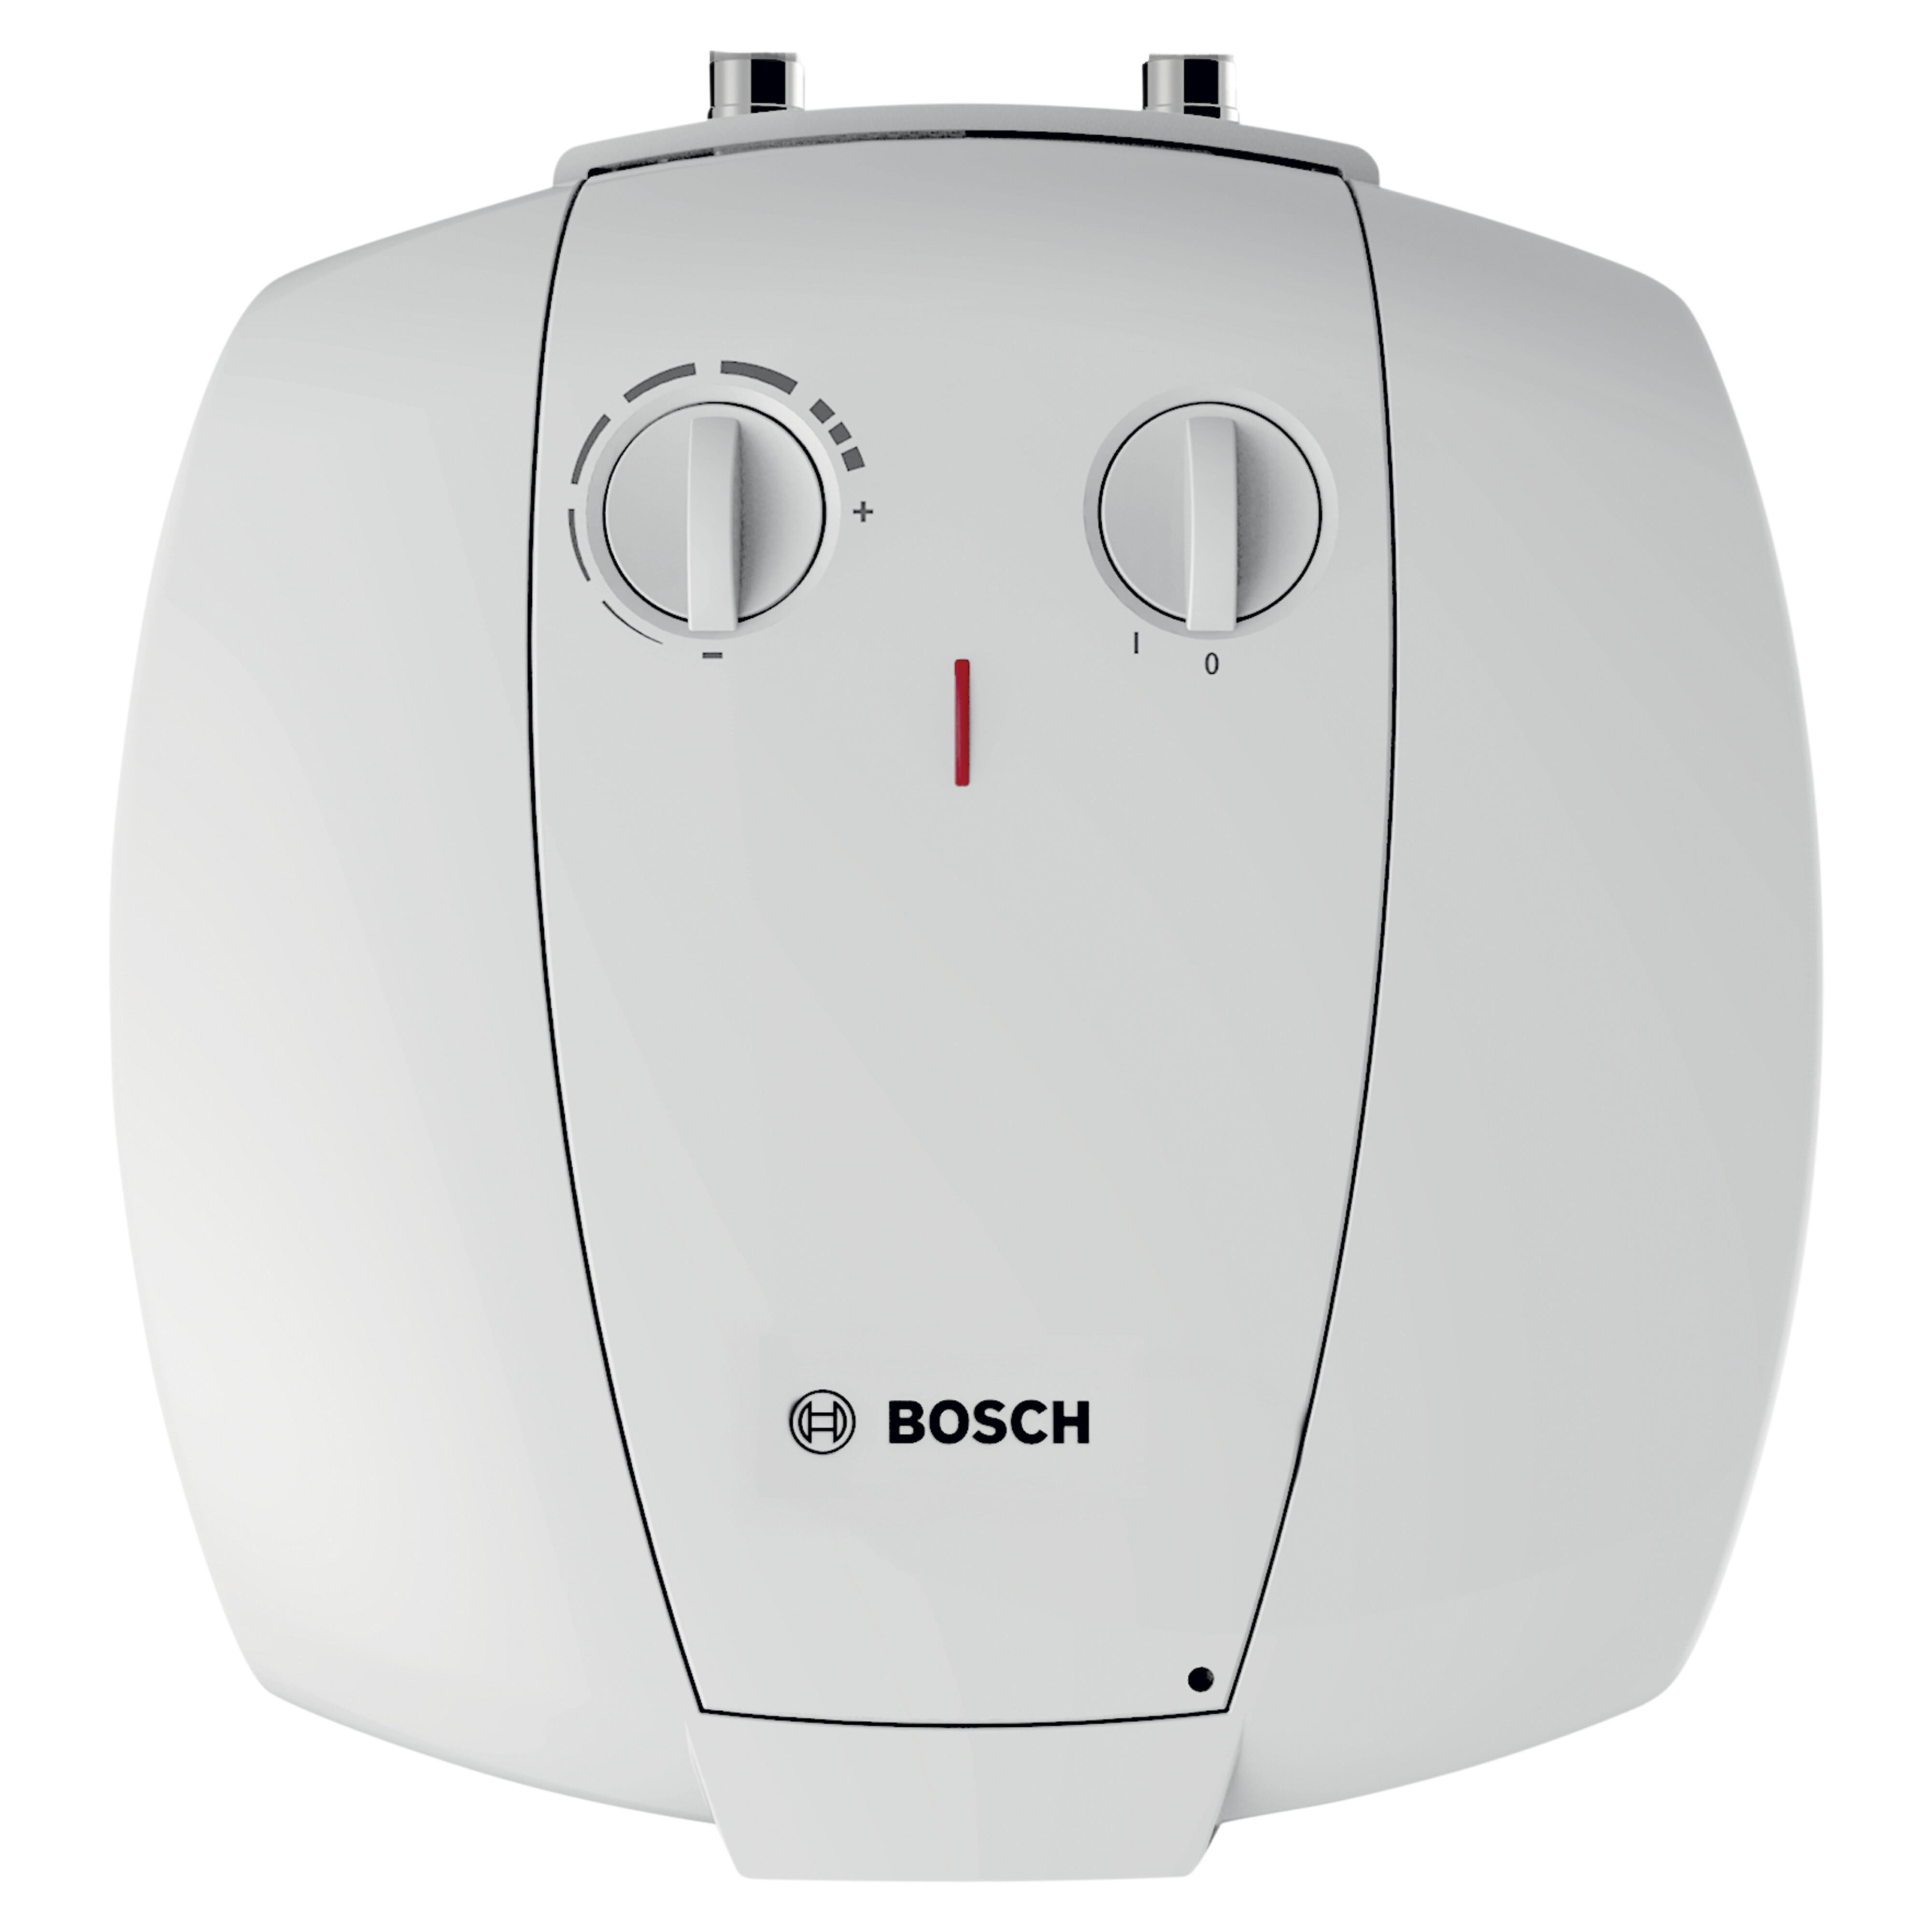 Graden Celsius Vervolgen neem medicijnen Bosch keukenboiler 2000T ES 10L natte weerstand 1500W